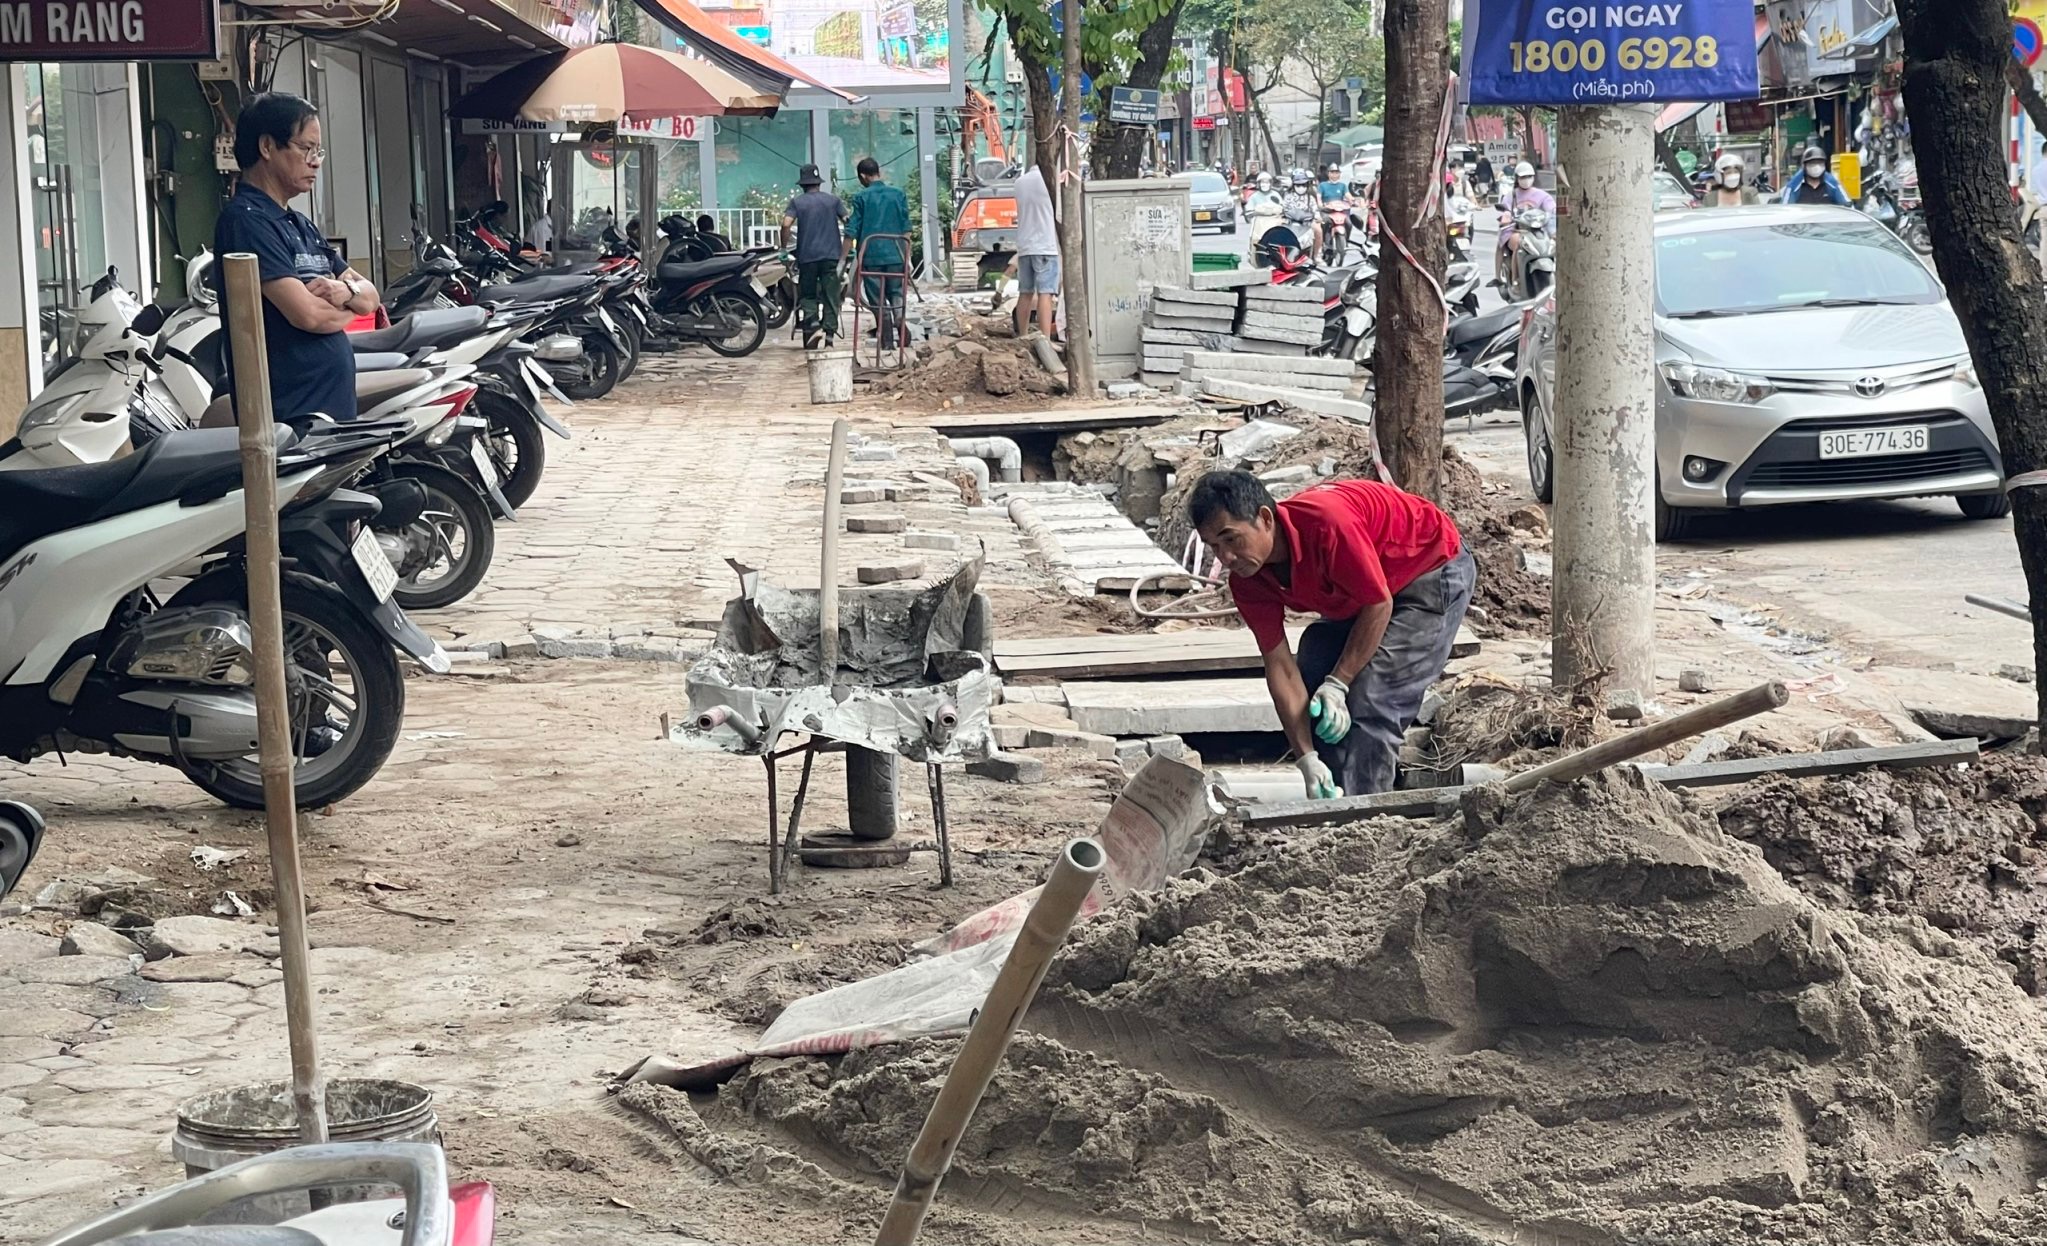 Một góc đường Thái Thịnh được đào hào, xẻ rãnh, gây nguy hiểm cho người đi bộ. Ảnh: Trà My